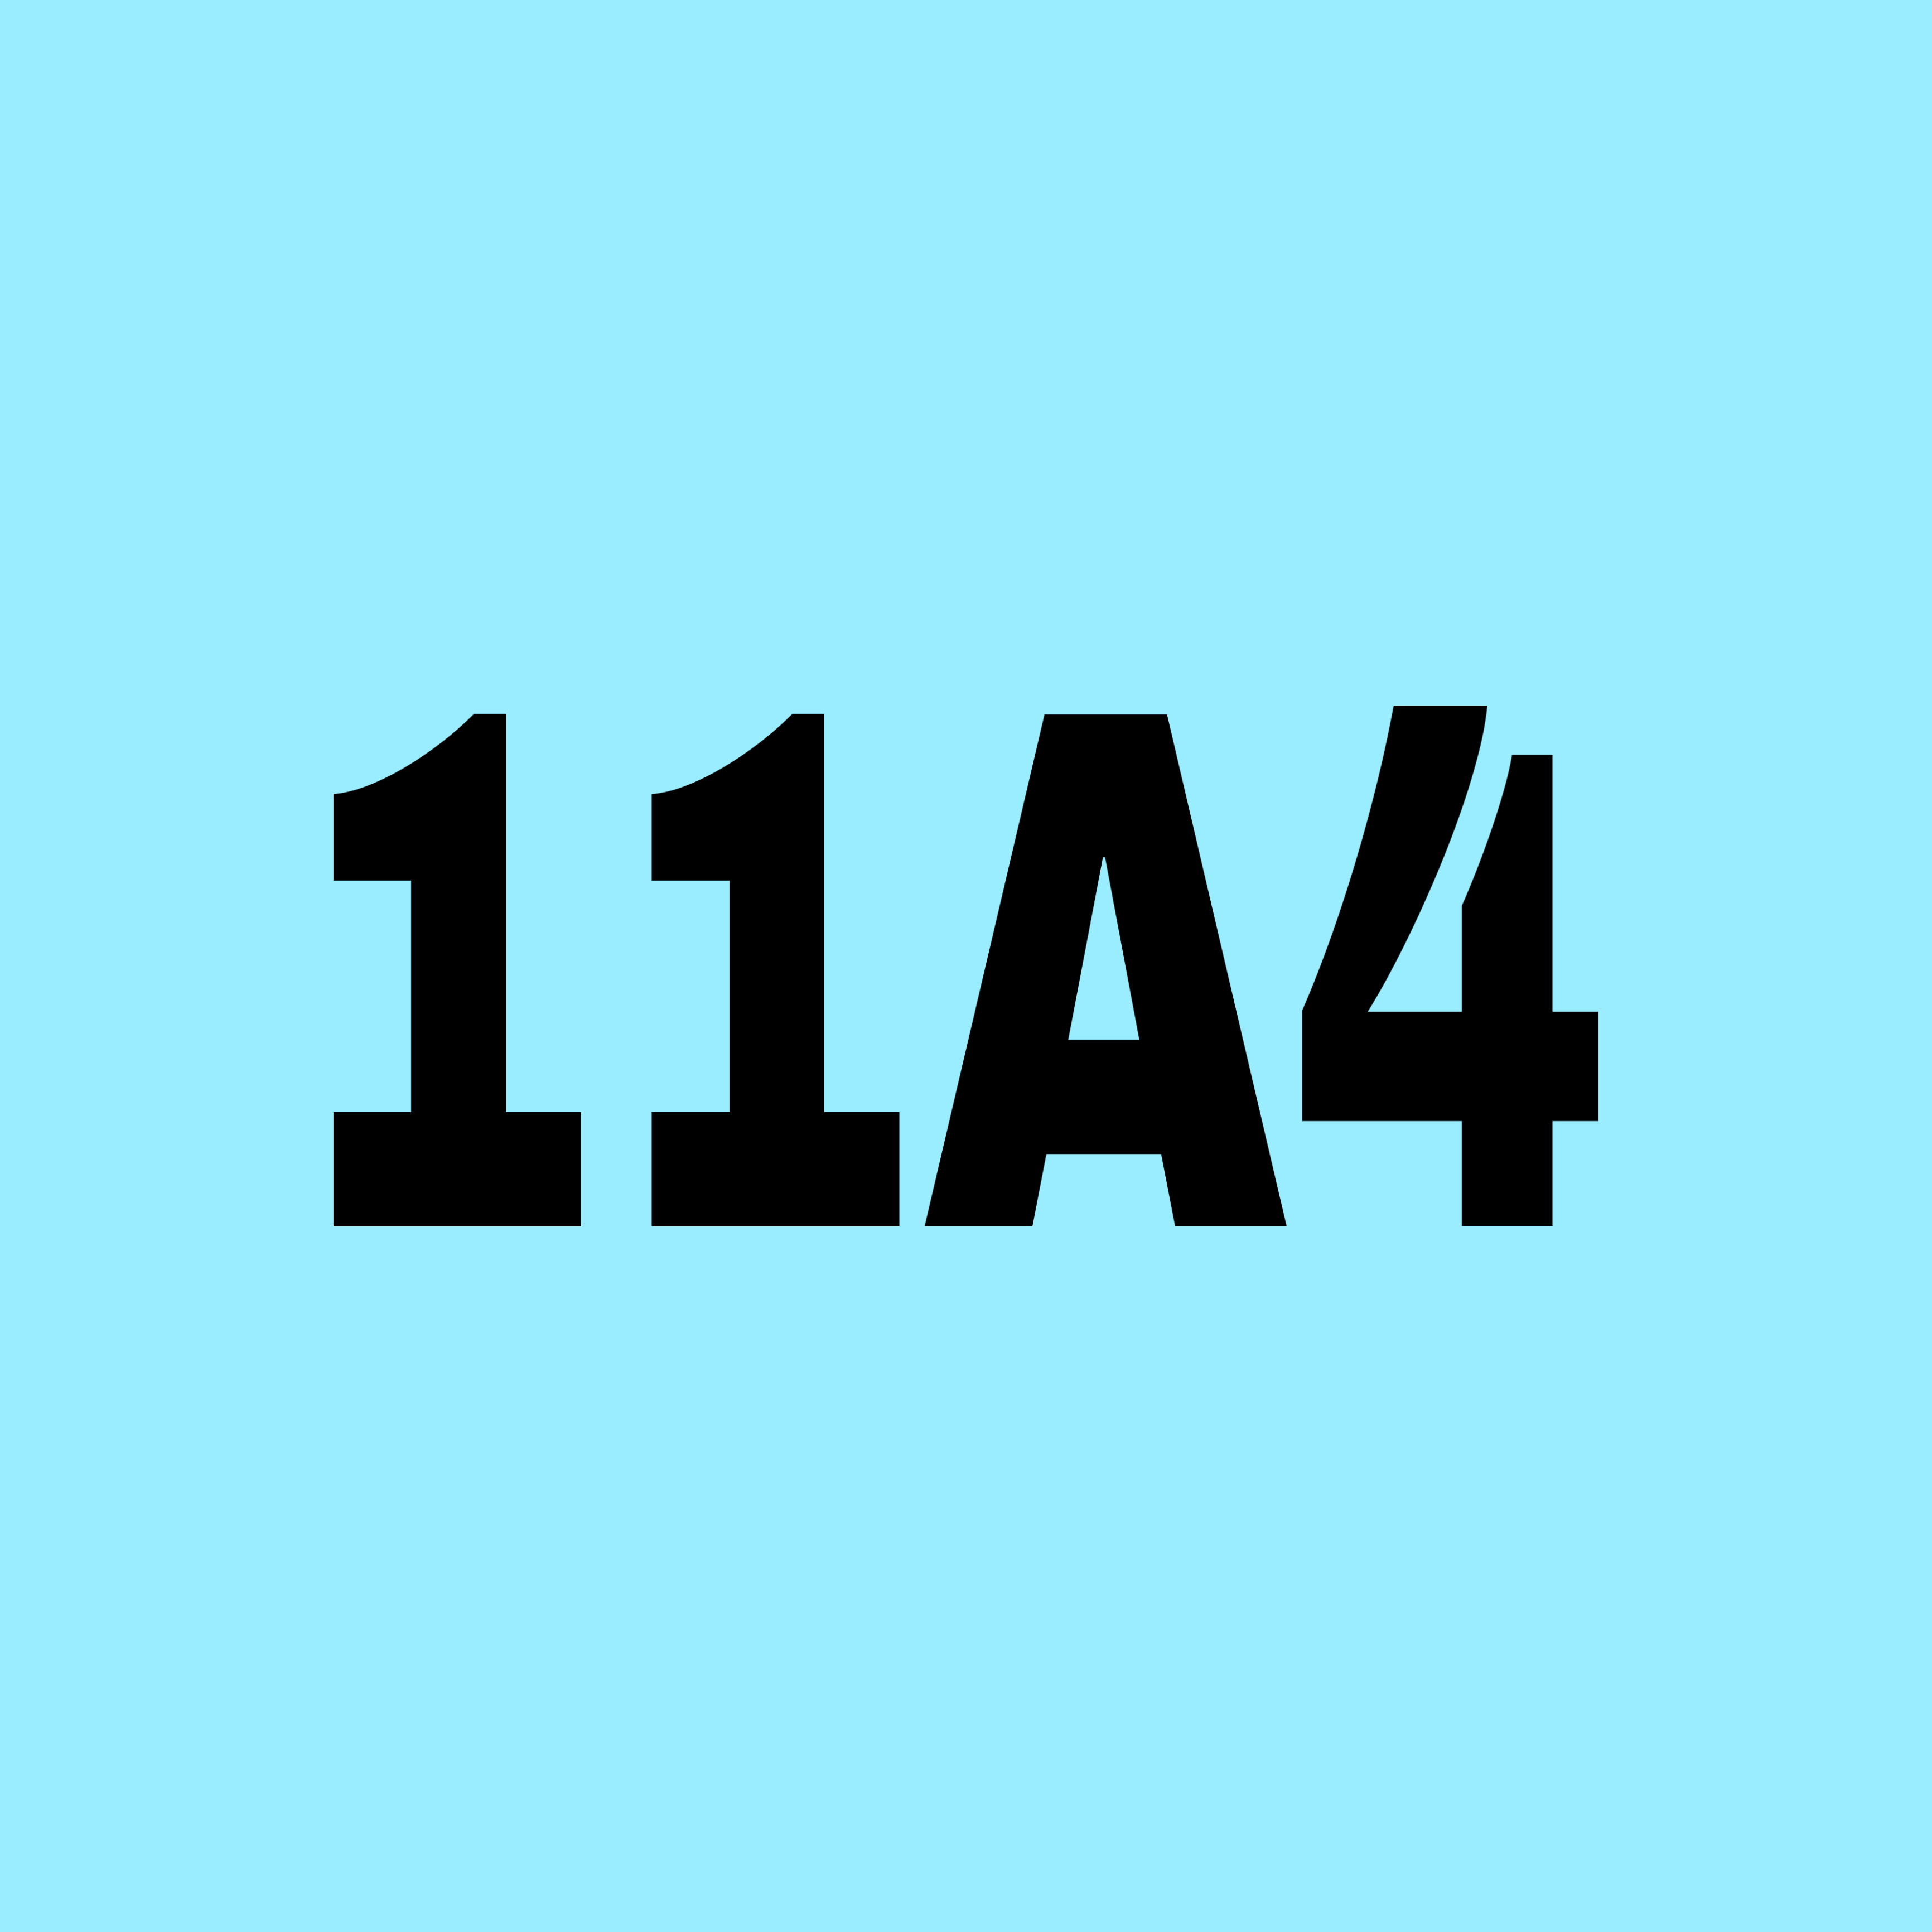 11A4